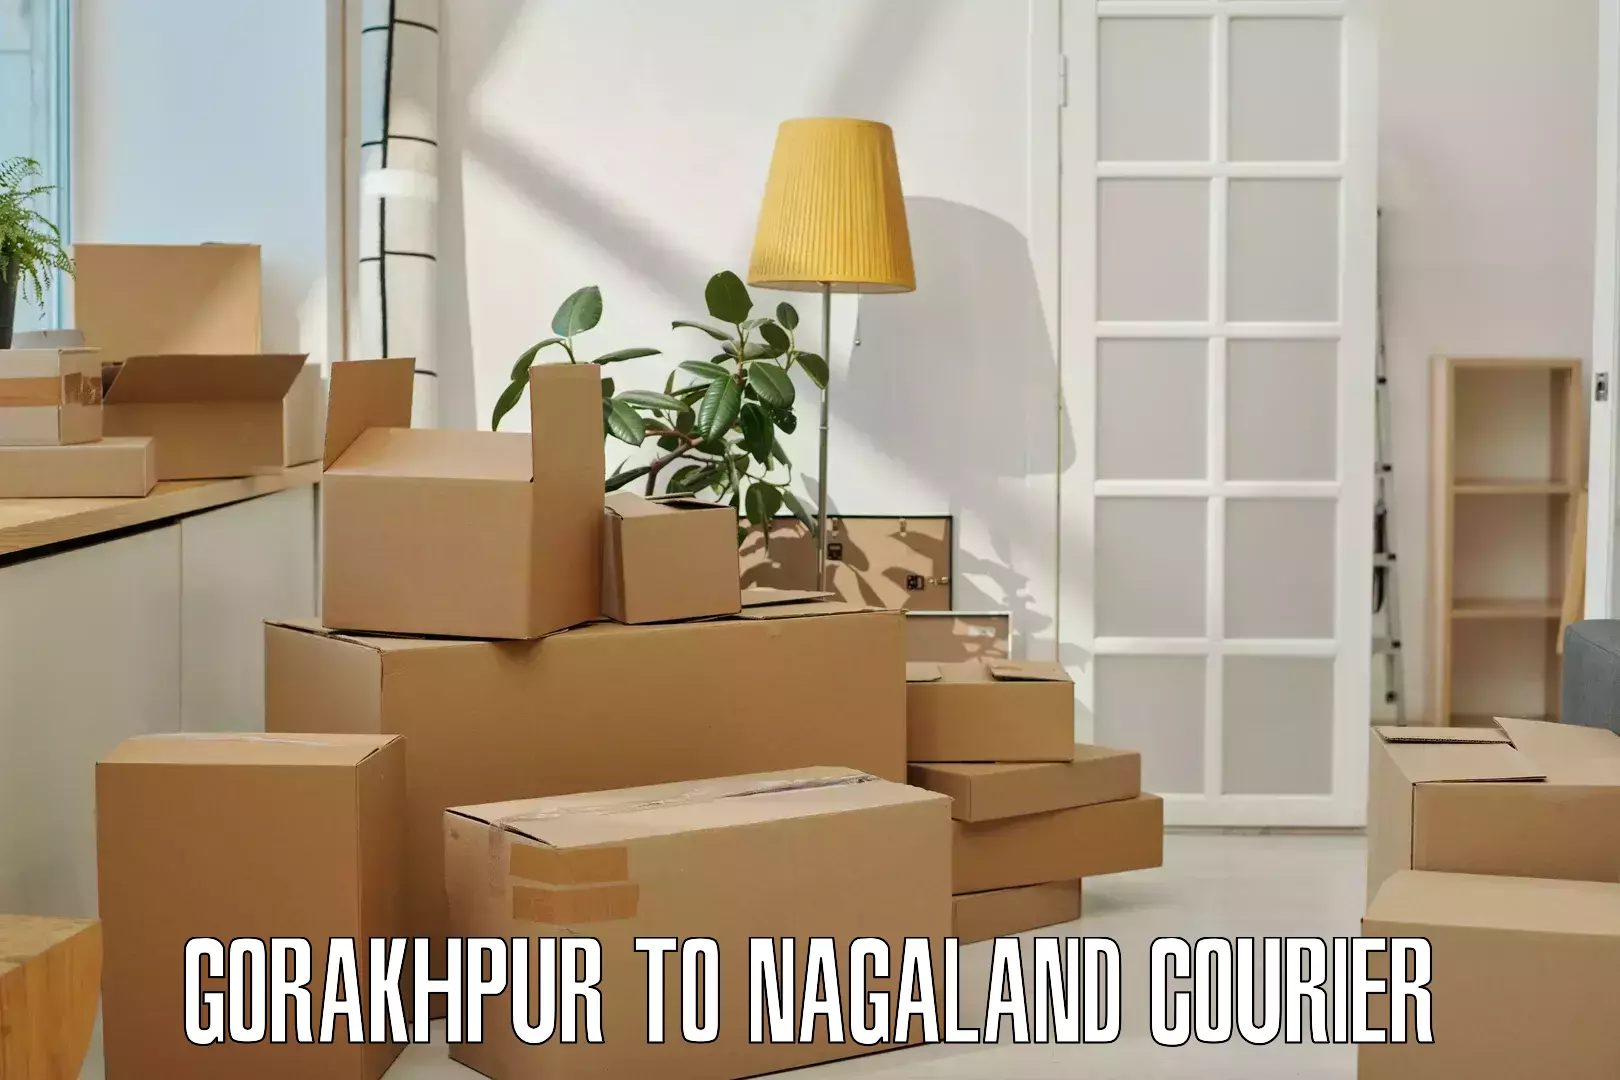 Local courier options Gorakhpur to Nagaland